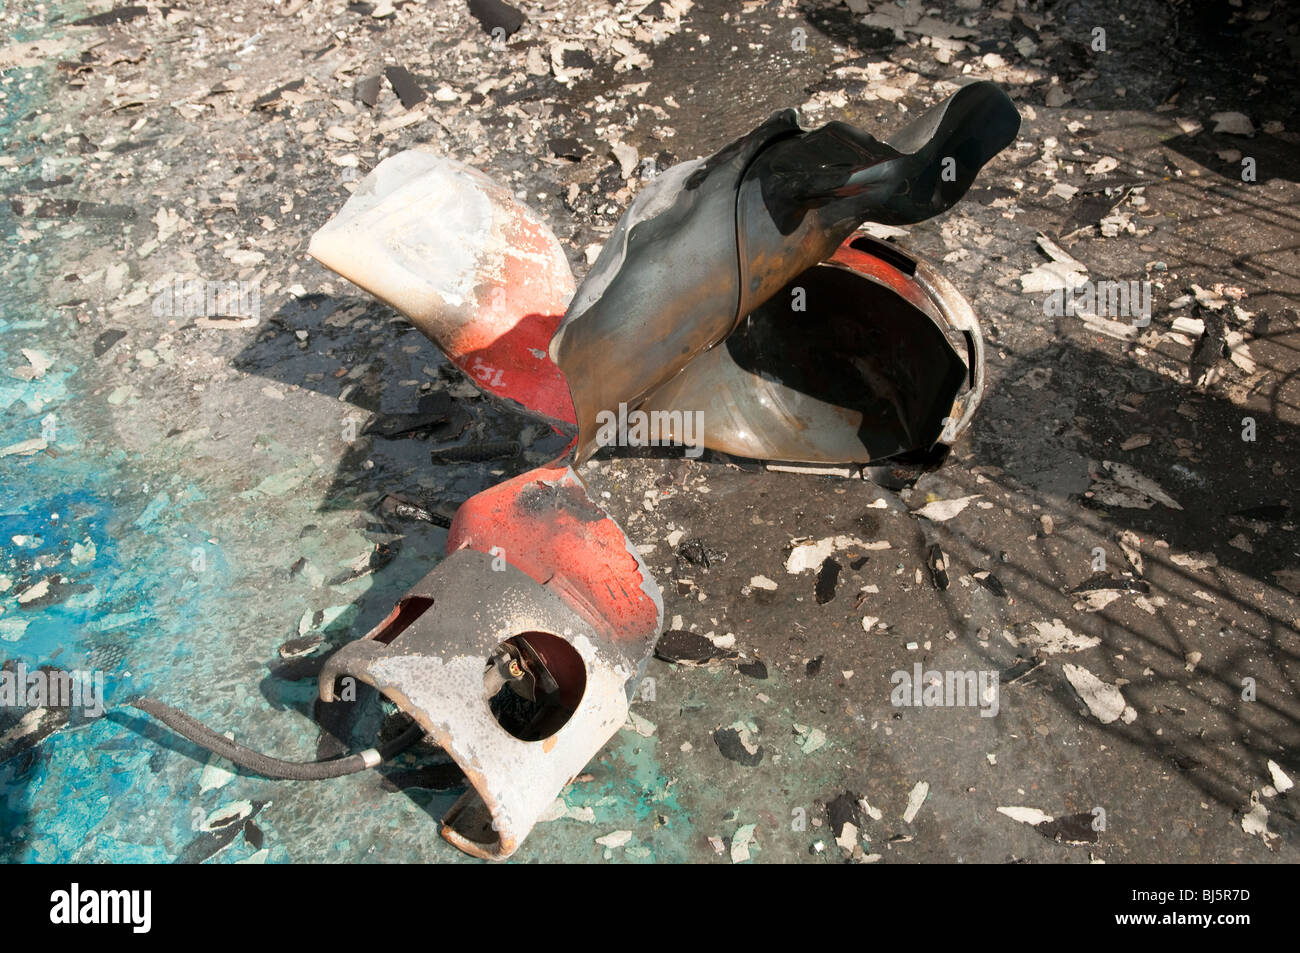 Bouteille de gaz propane a explosé et la rupture Photo Stock - Alamy